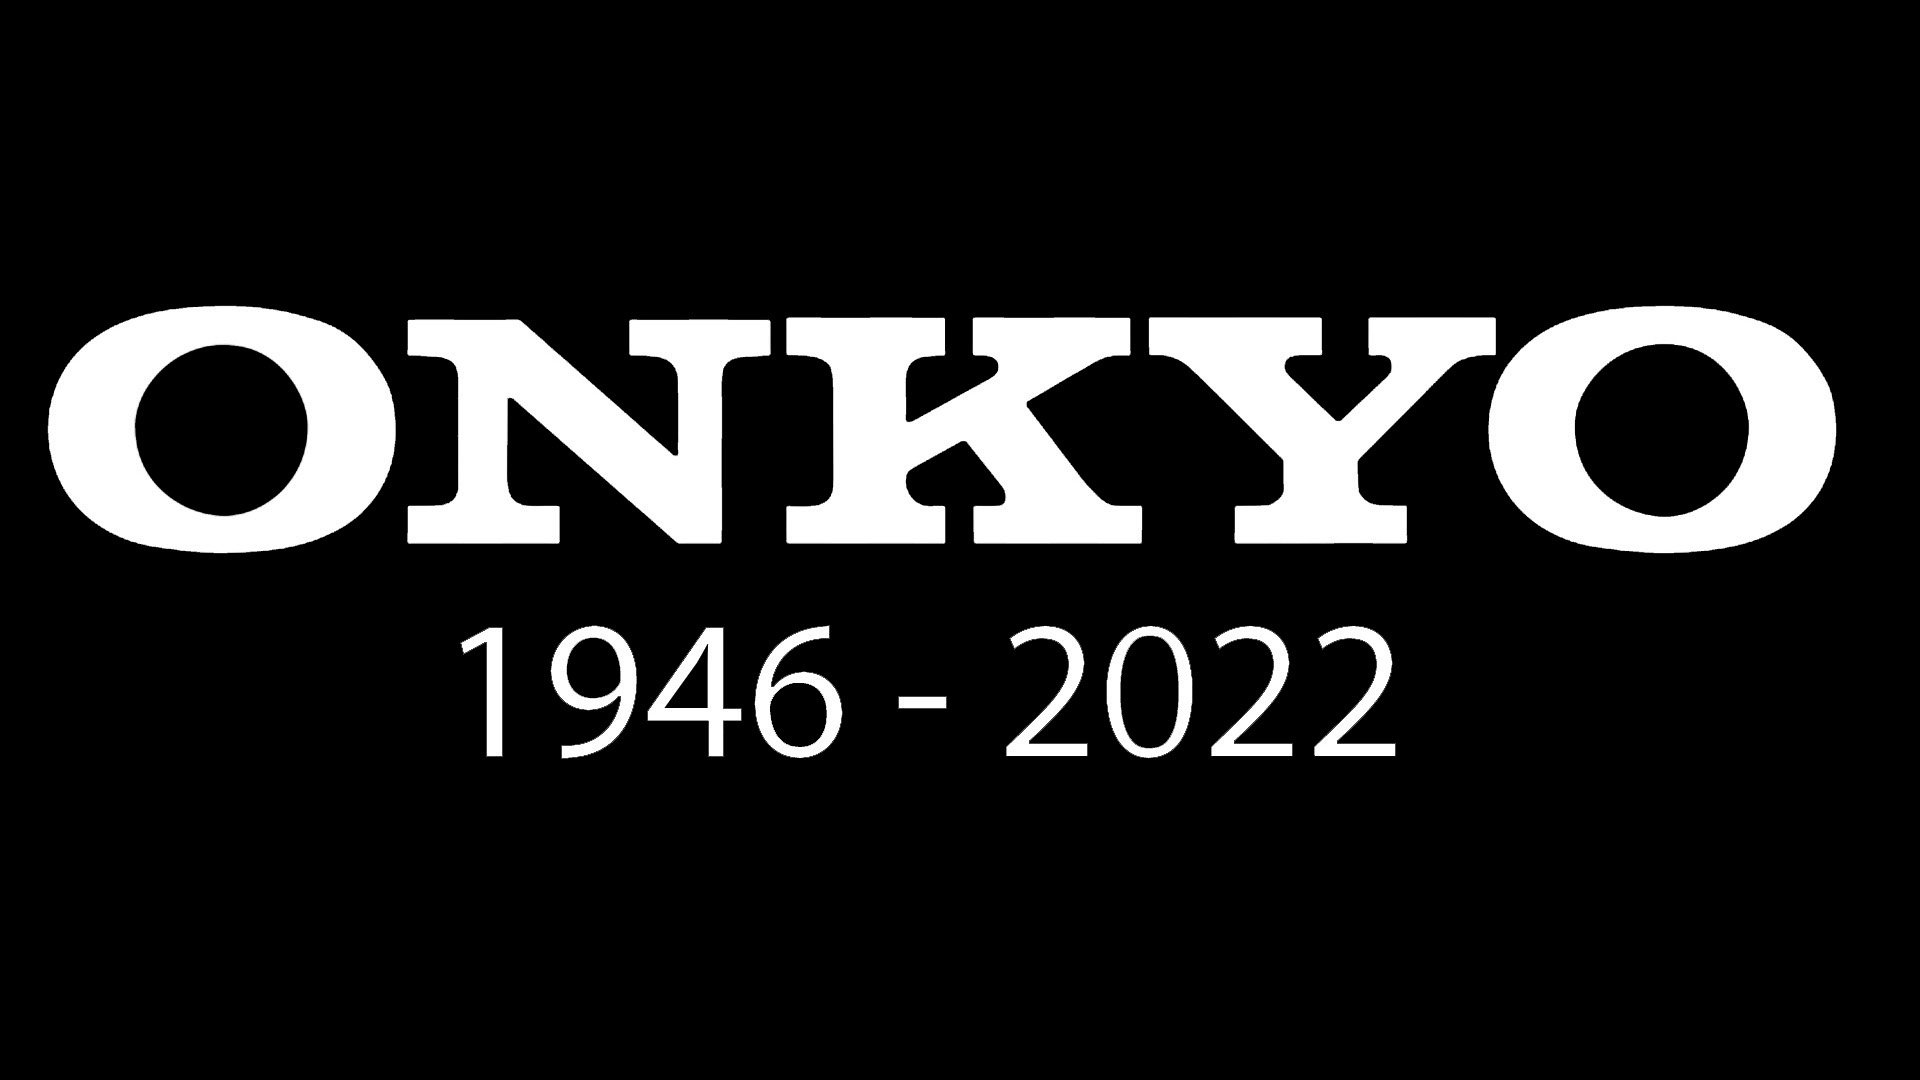 Thương hiệu âm thanh lâu đời Onkyo chính thức tuyên bố phá sản